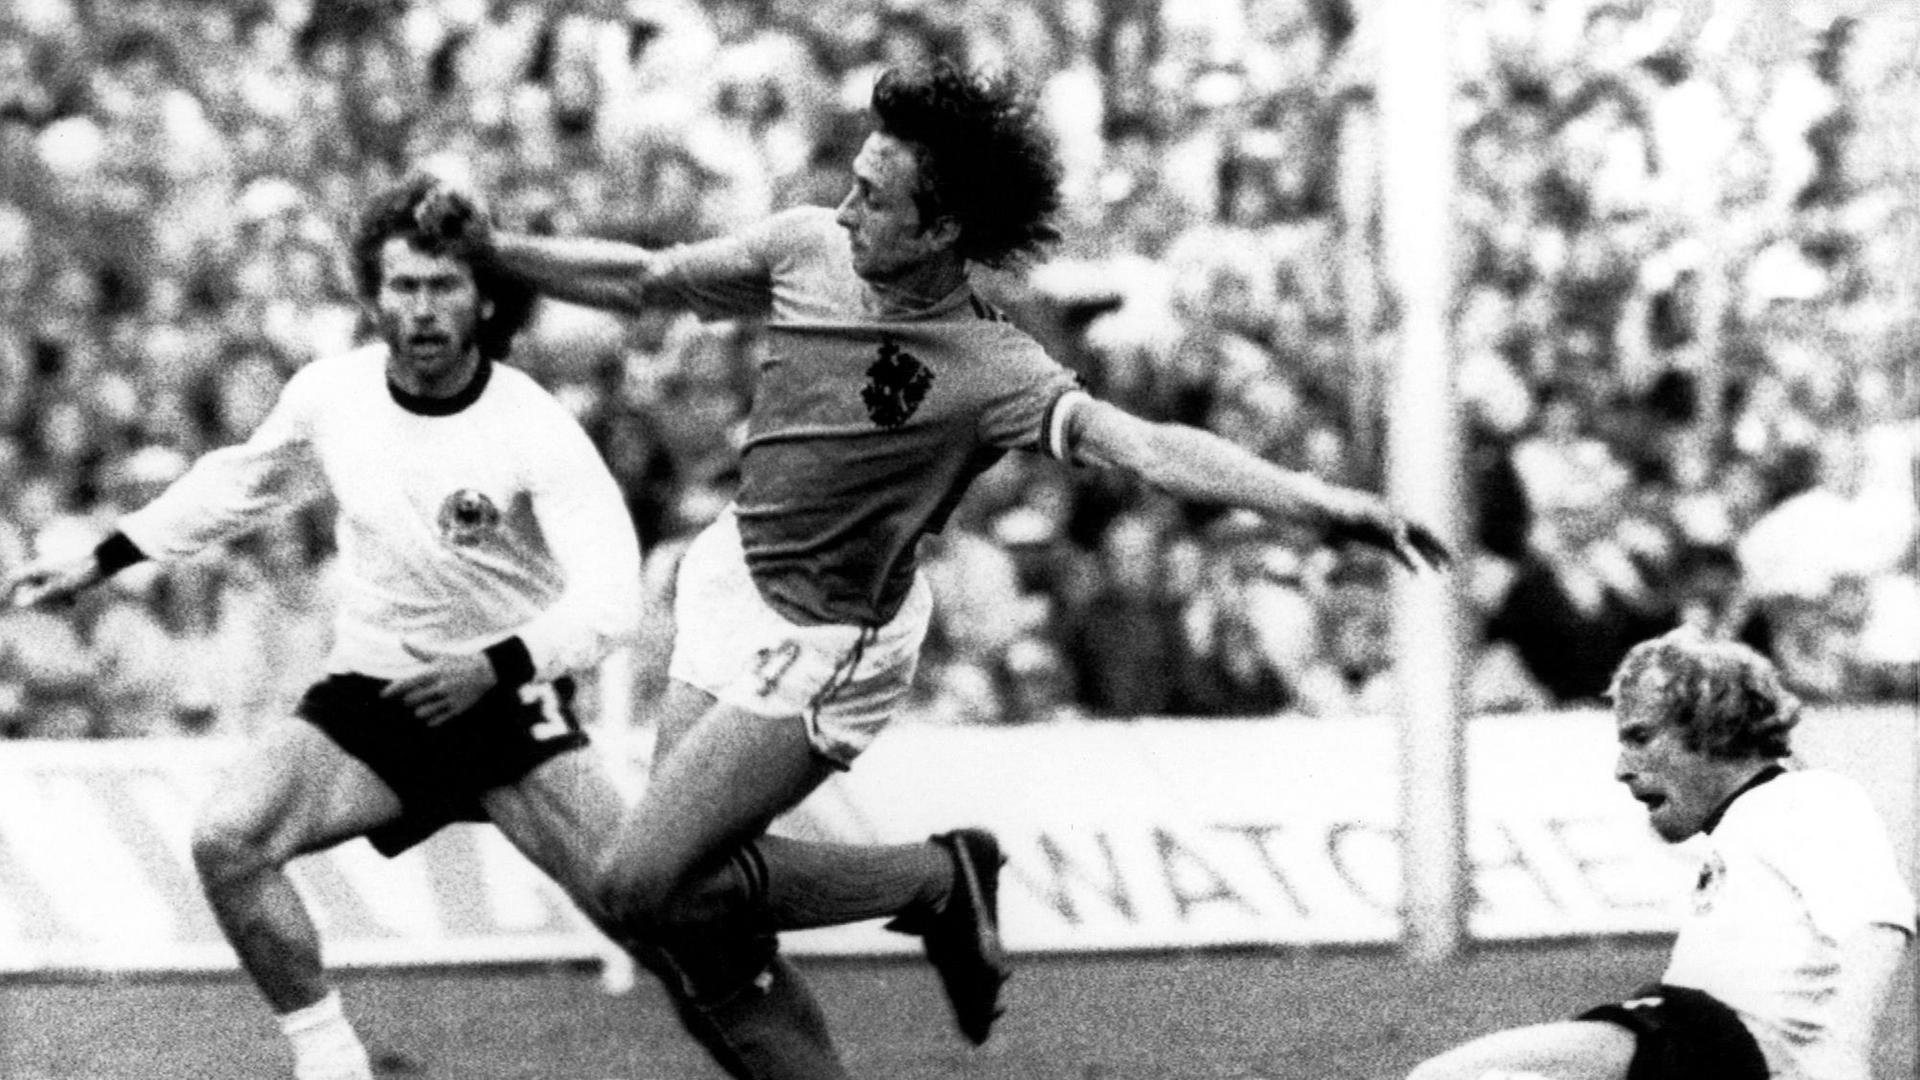 Man sieht Johan Cruyff zwischen Paul Breitner und Berti Vogts im Finale von der WM 1974.